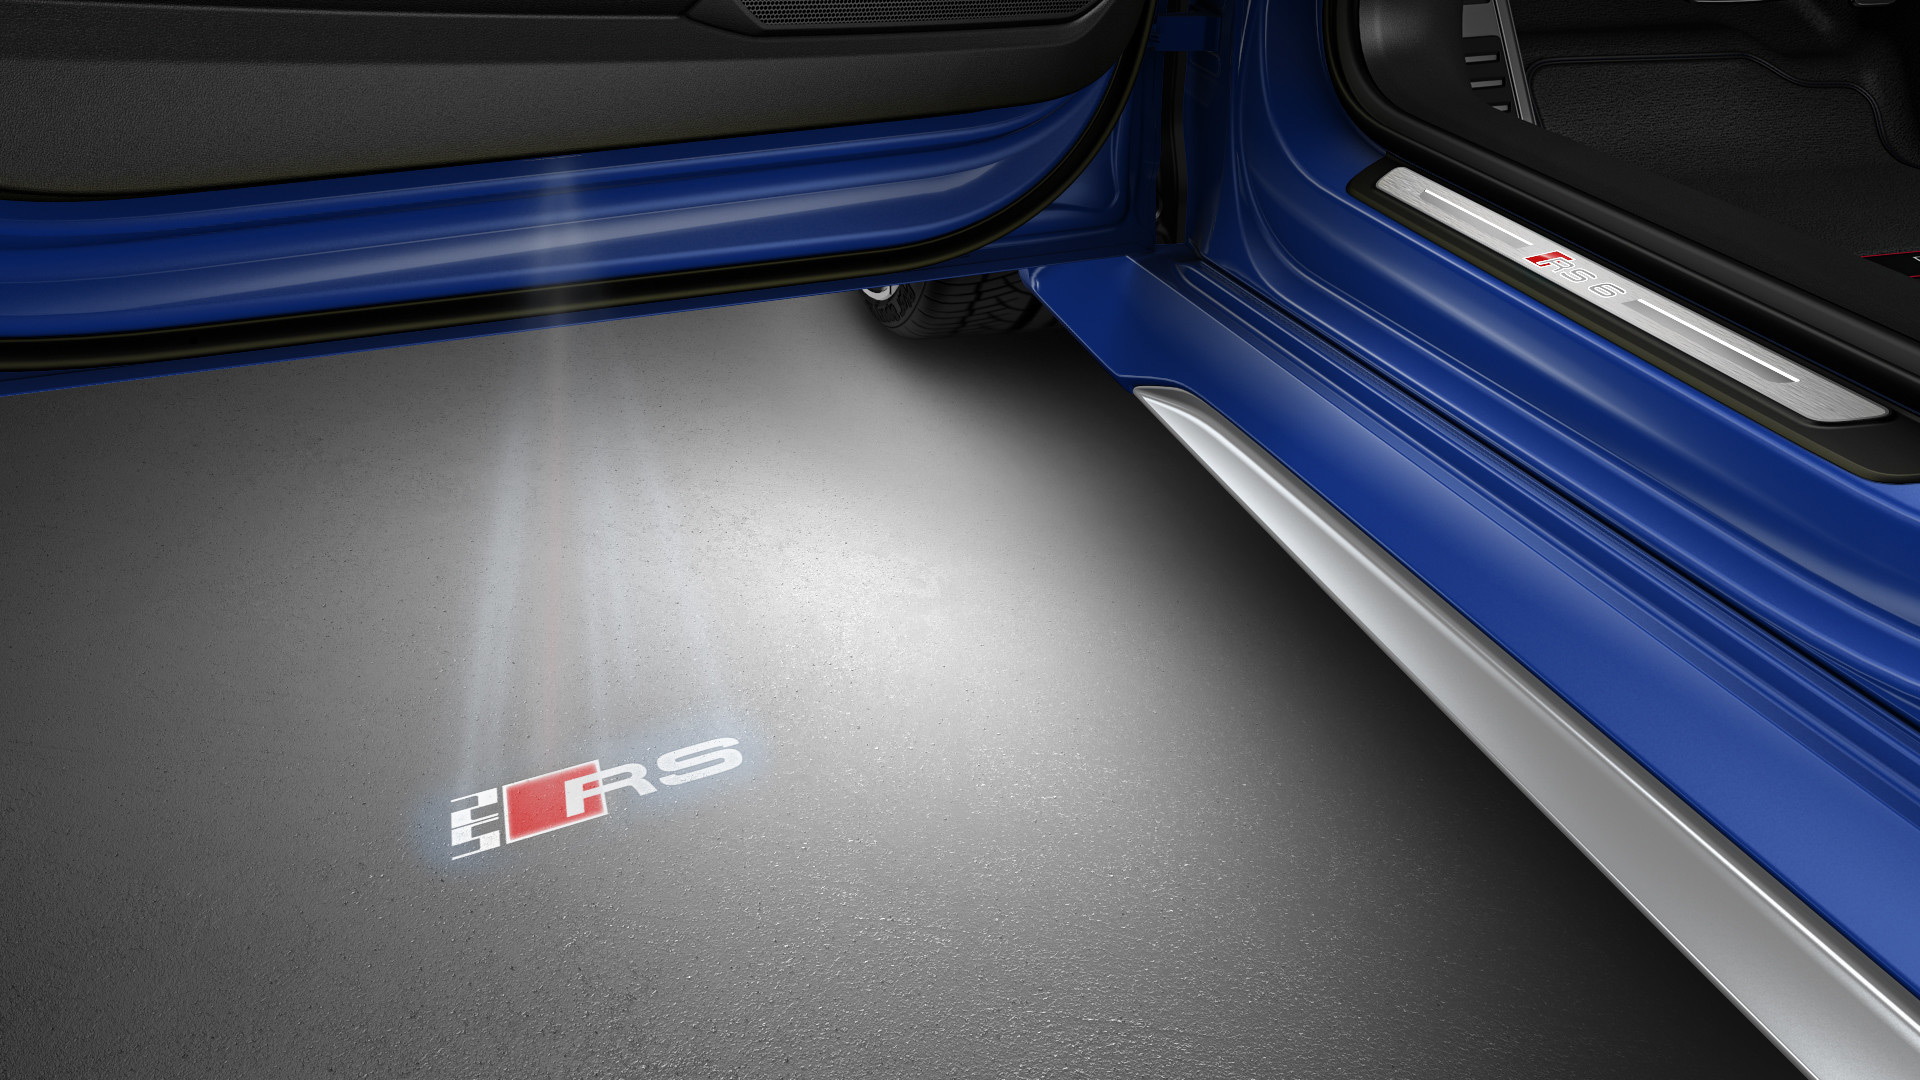 2020 Audi RS 6 Avant in Nogaro Blue